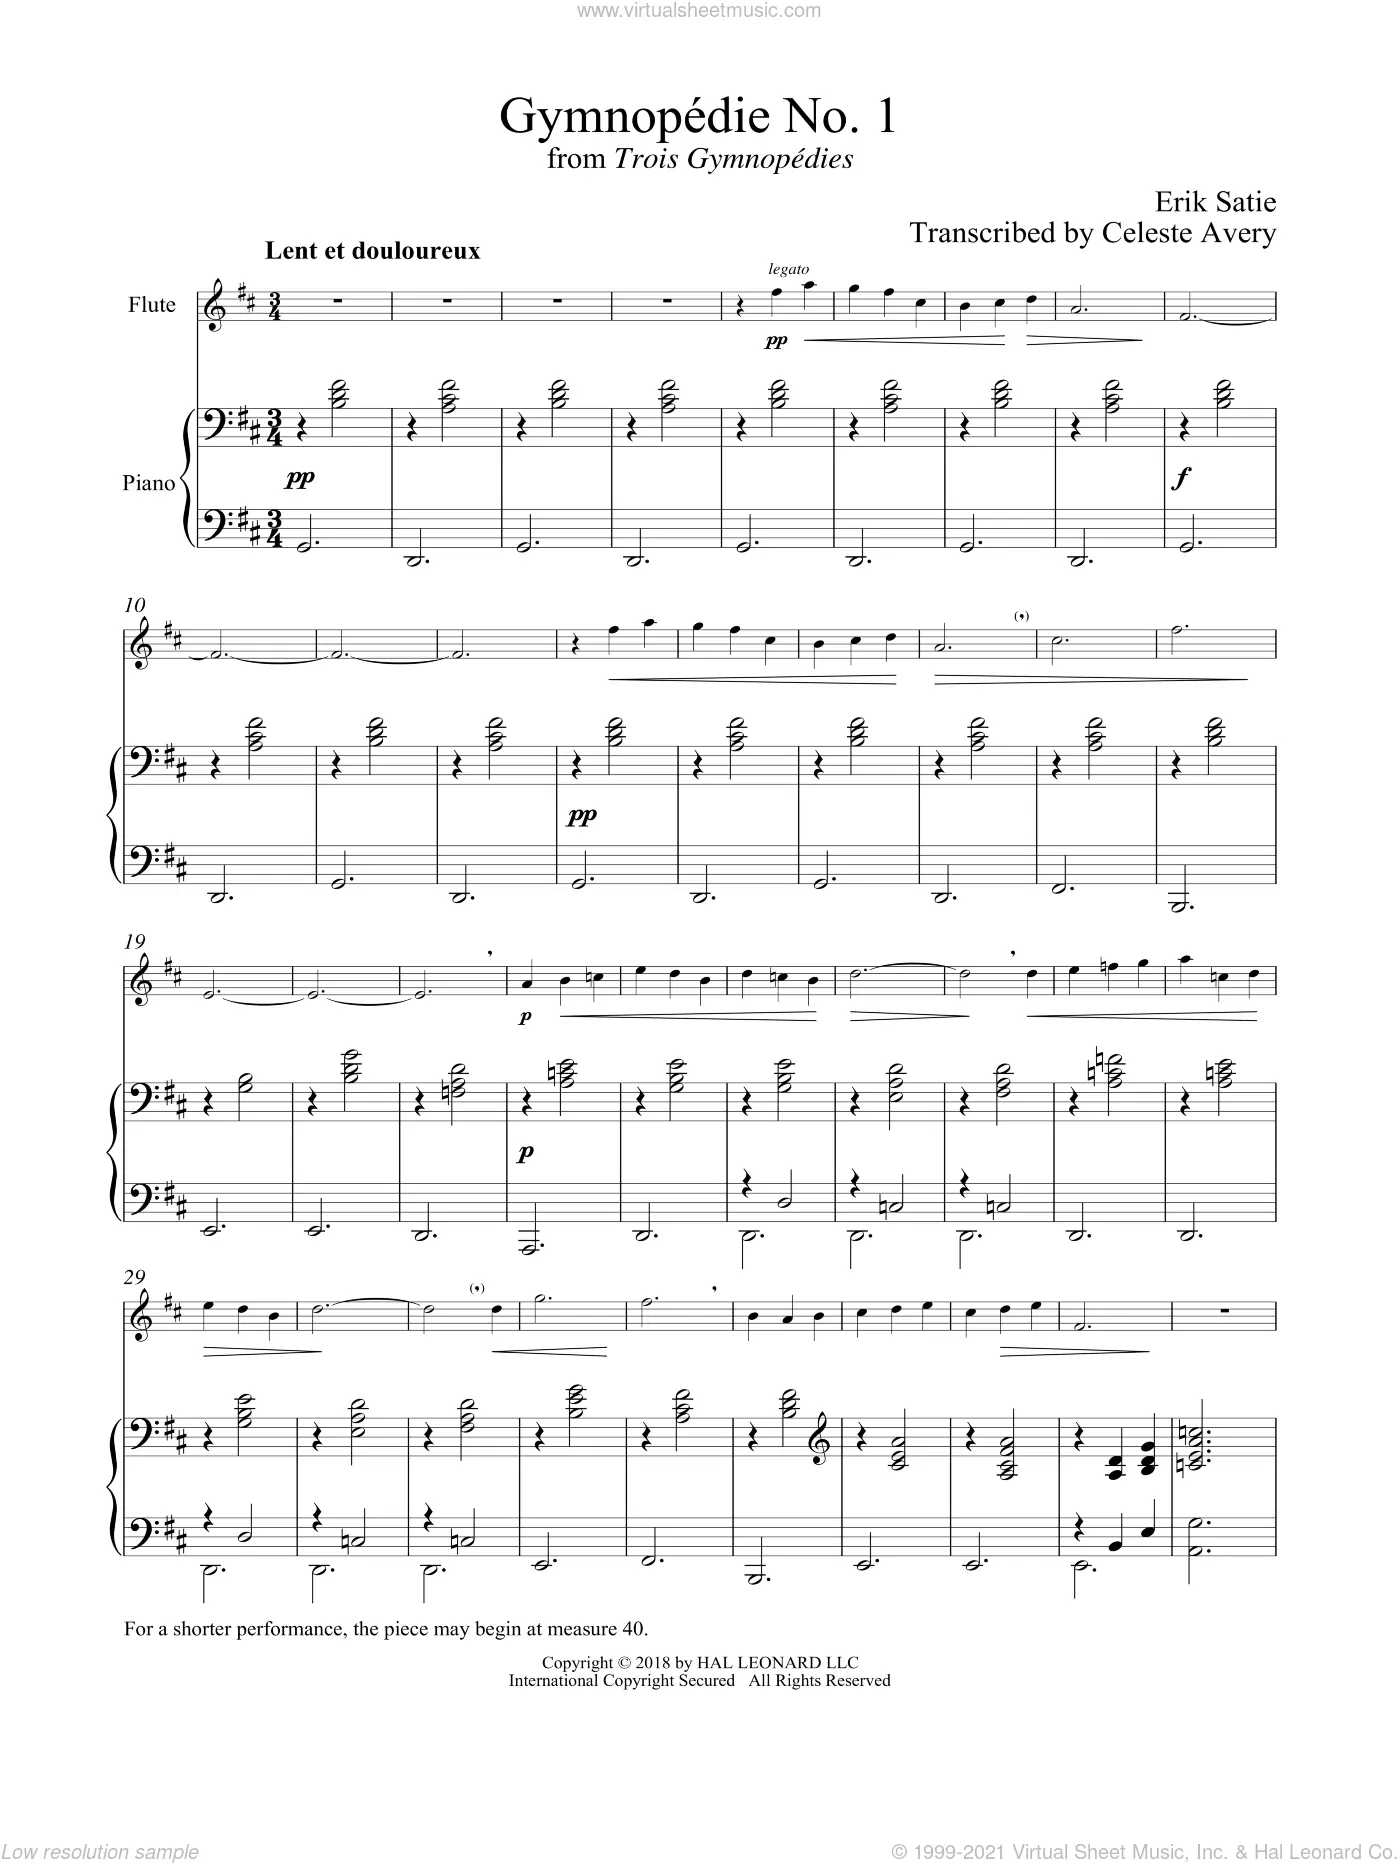 Gnossiennes - Gymnopédies de Erik Satie » Partitions pour flûte